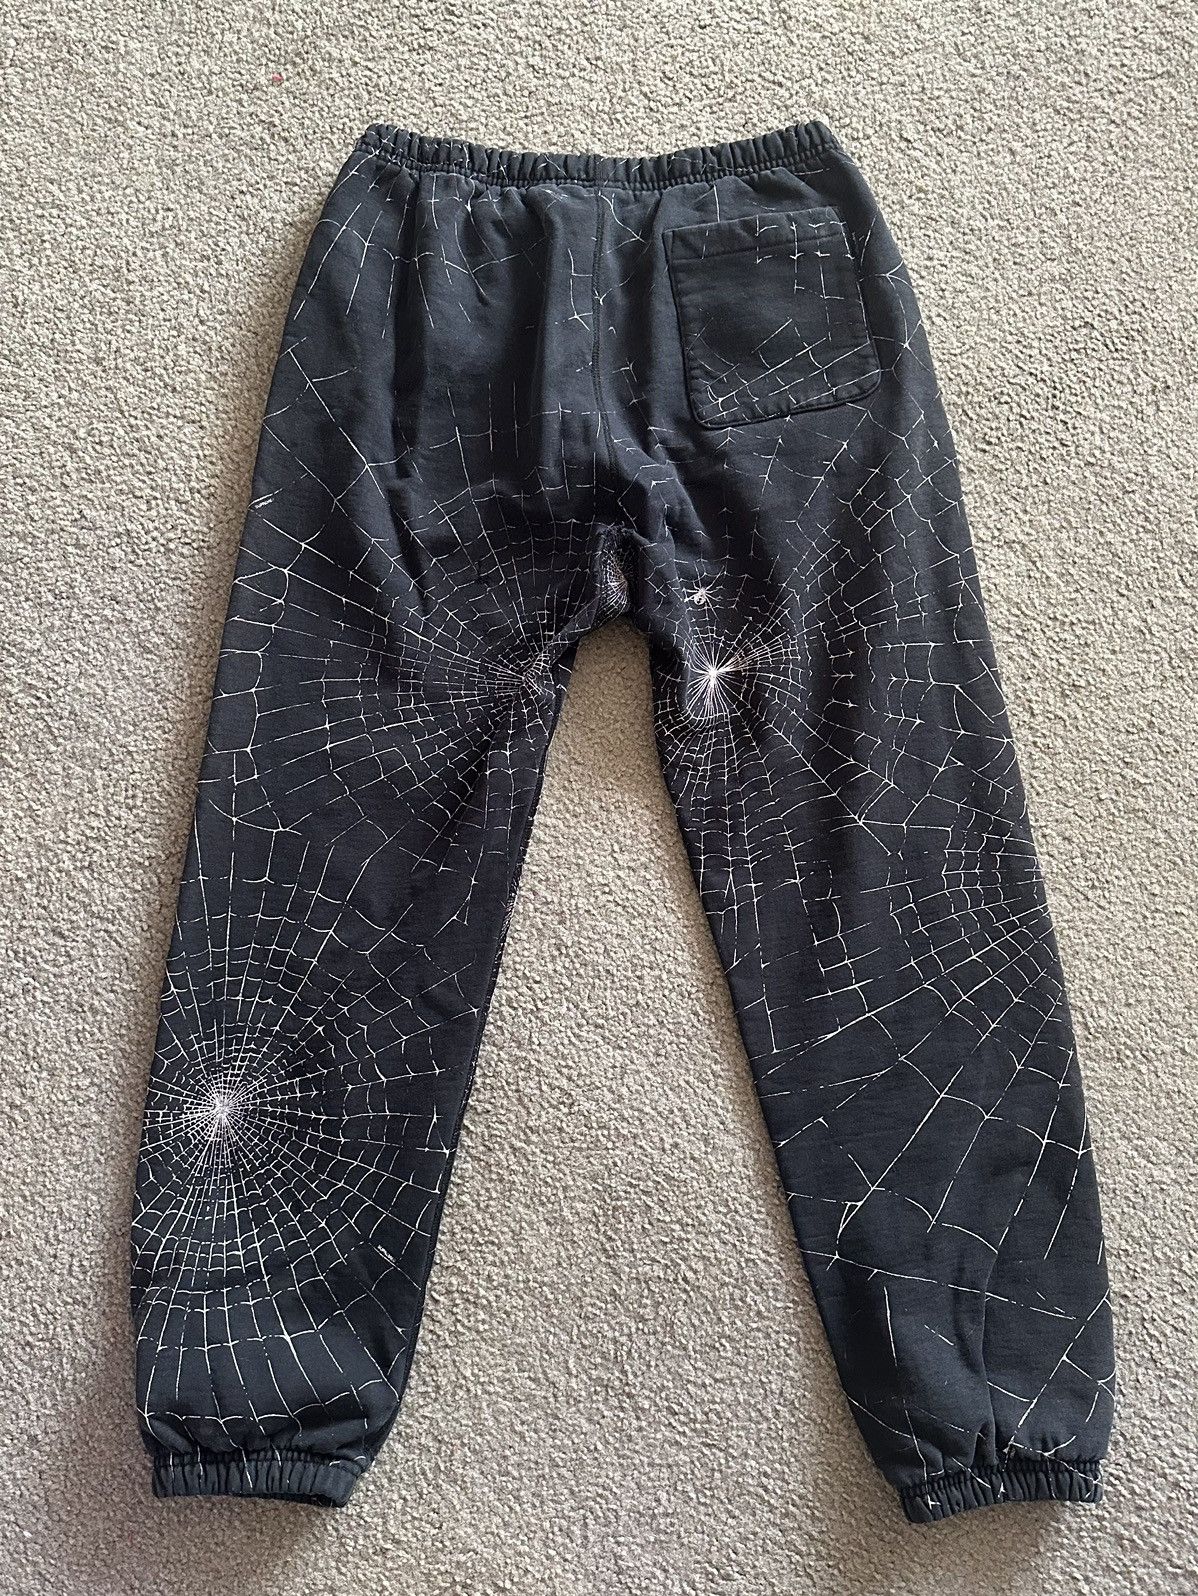 Supreme Supreme FW16 Spiderweb Sweatpants | Grailed